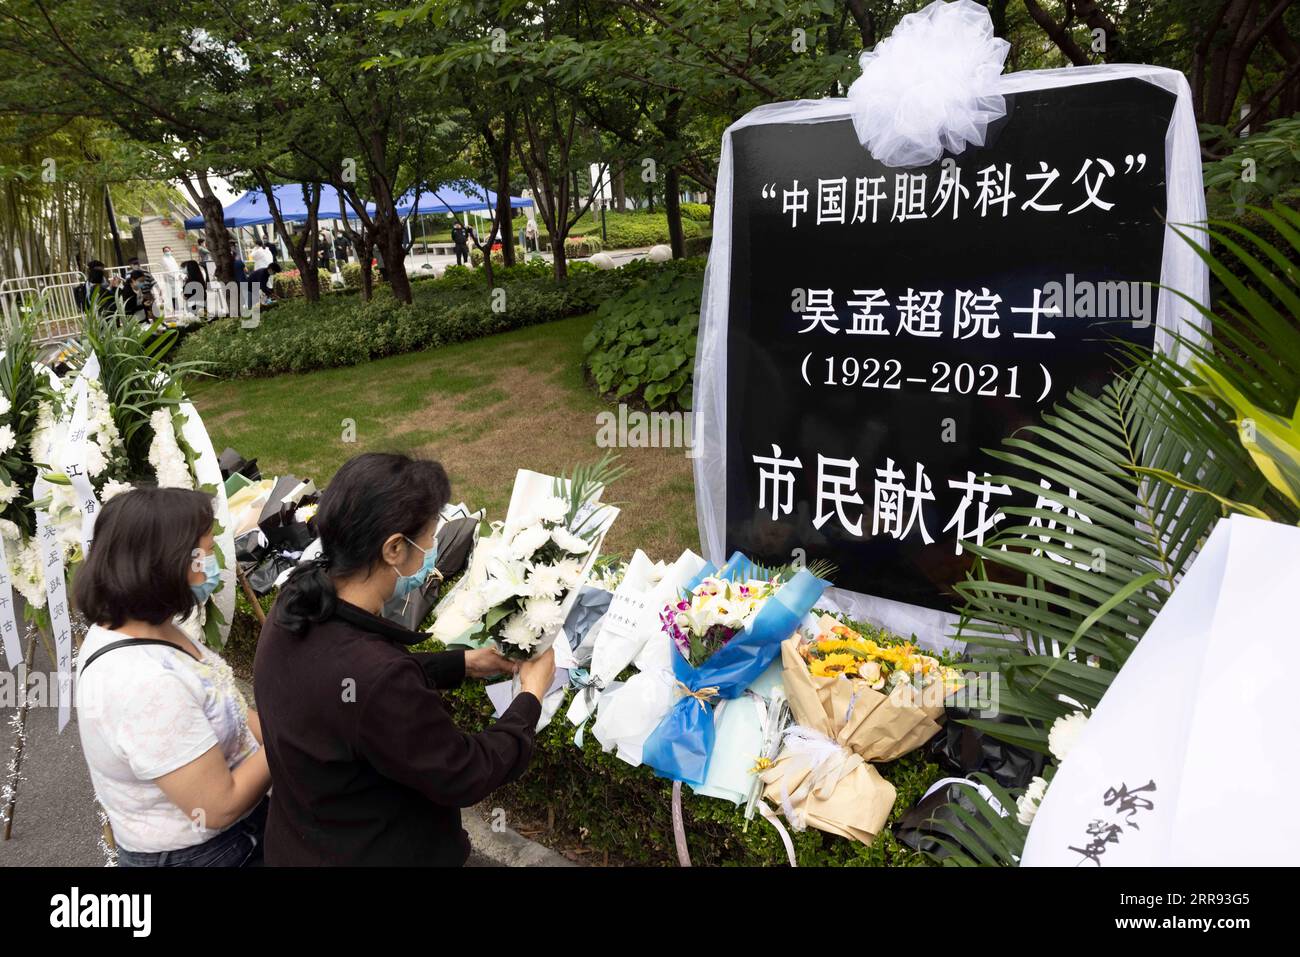 210526 -- SHANGHAI, 26. Mai 2021 -- Menschen stellen Blumen auf, um dem verstorbenen chinesischen Spitzenchirurgen Wu Mengchao im Longhua-Bestattungssalon im ostchinesischen Shanghai, 26. Mai 2021, zu huldigen. Am Mittwoch fand ein Gedenkgottesdienst für Wu Mengchao statt, der als Vater der chinesischen Leberchirurgie bekannt ist. Der führende hepatobiliäre Chirurg, der ein einzigartiges System der Leberchirurgie in China etablierte und sich fast acht Jahrzehnte lang der Rettung von Menschenleben widmete, starb am vergangenen Samstag um 99 Uhr in Shanghai. CHINA-SHANGHAI-WU MENGCHAO-MEMORIAL SERVICE CN WANGXXIANG PUBLICATIONXNOTXINXCHN Stockfoto